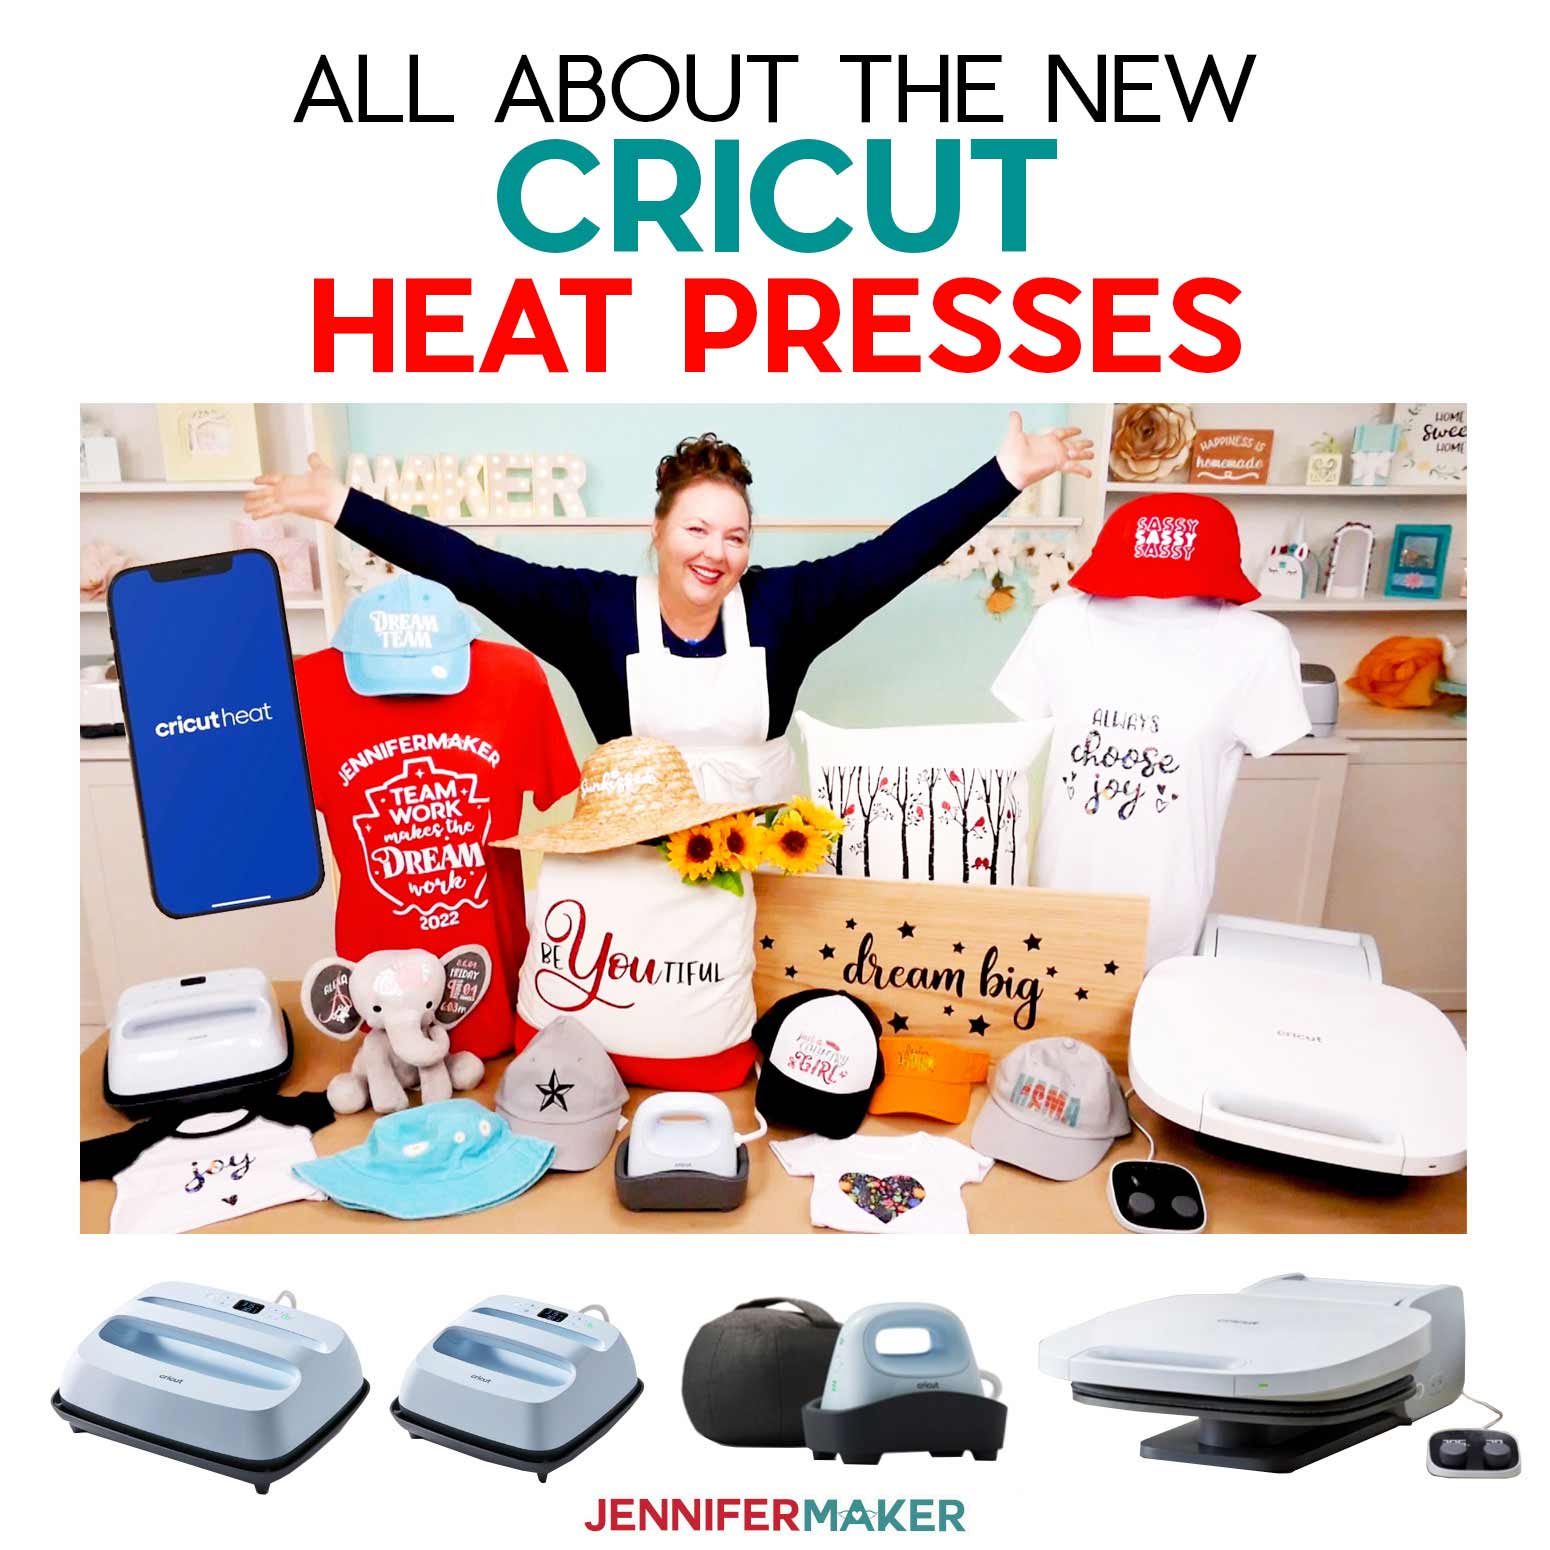 New Cricut Heat Presses: EasyPress 3, Hat Press, Autopress, and Cricut Heat App!